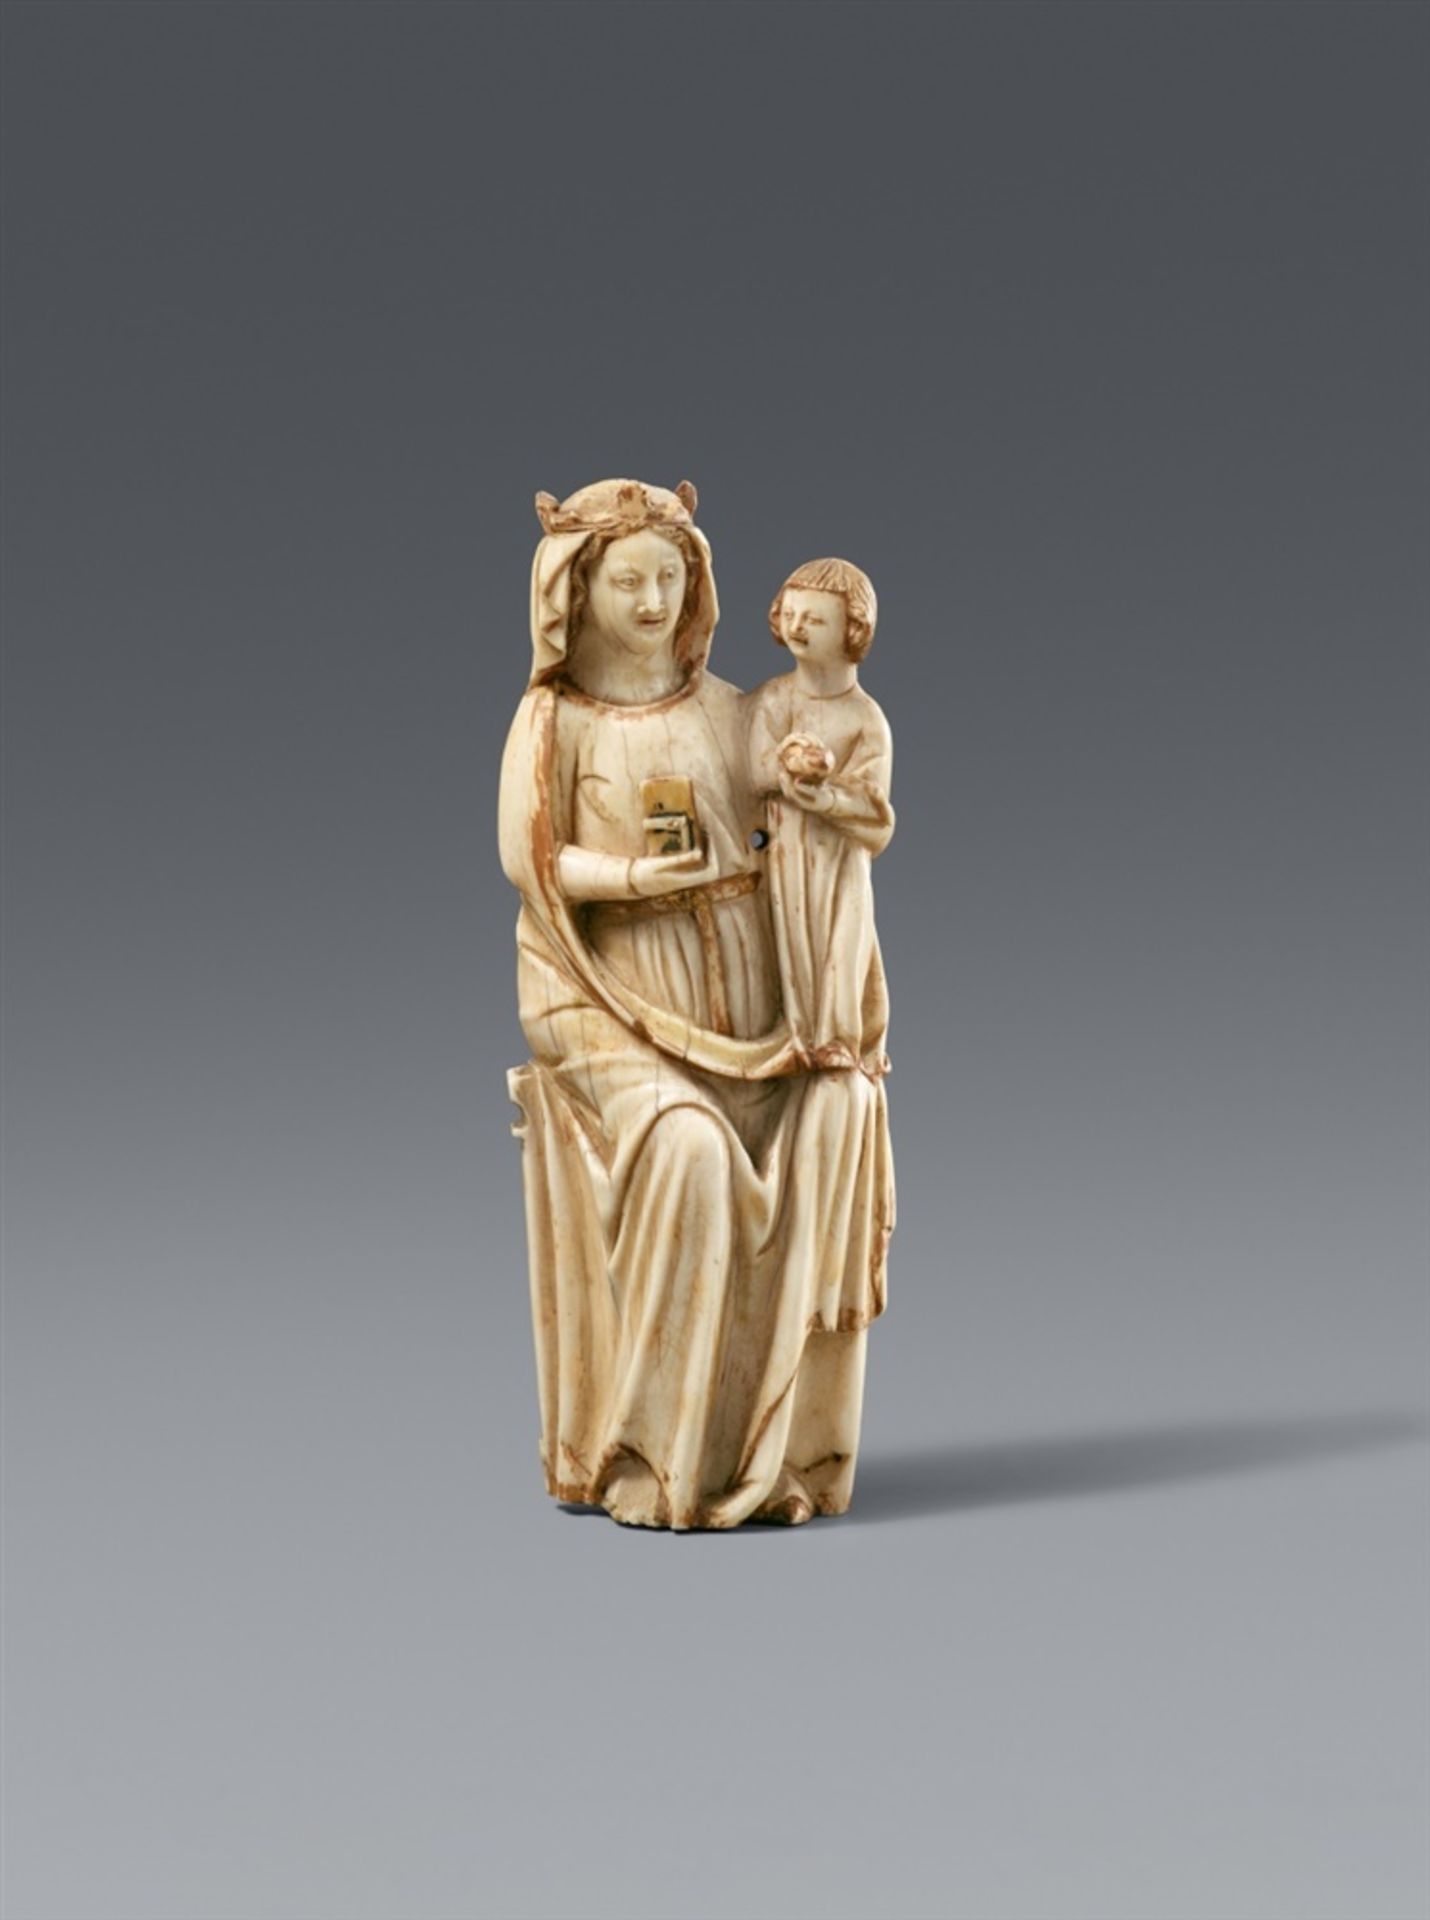 Frankreich 2. Hälfte 14. JahrhundertThronende Madonna mit Kind